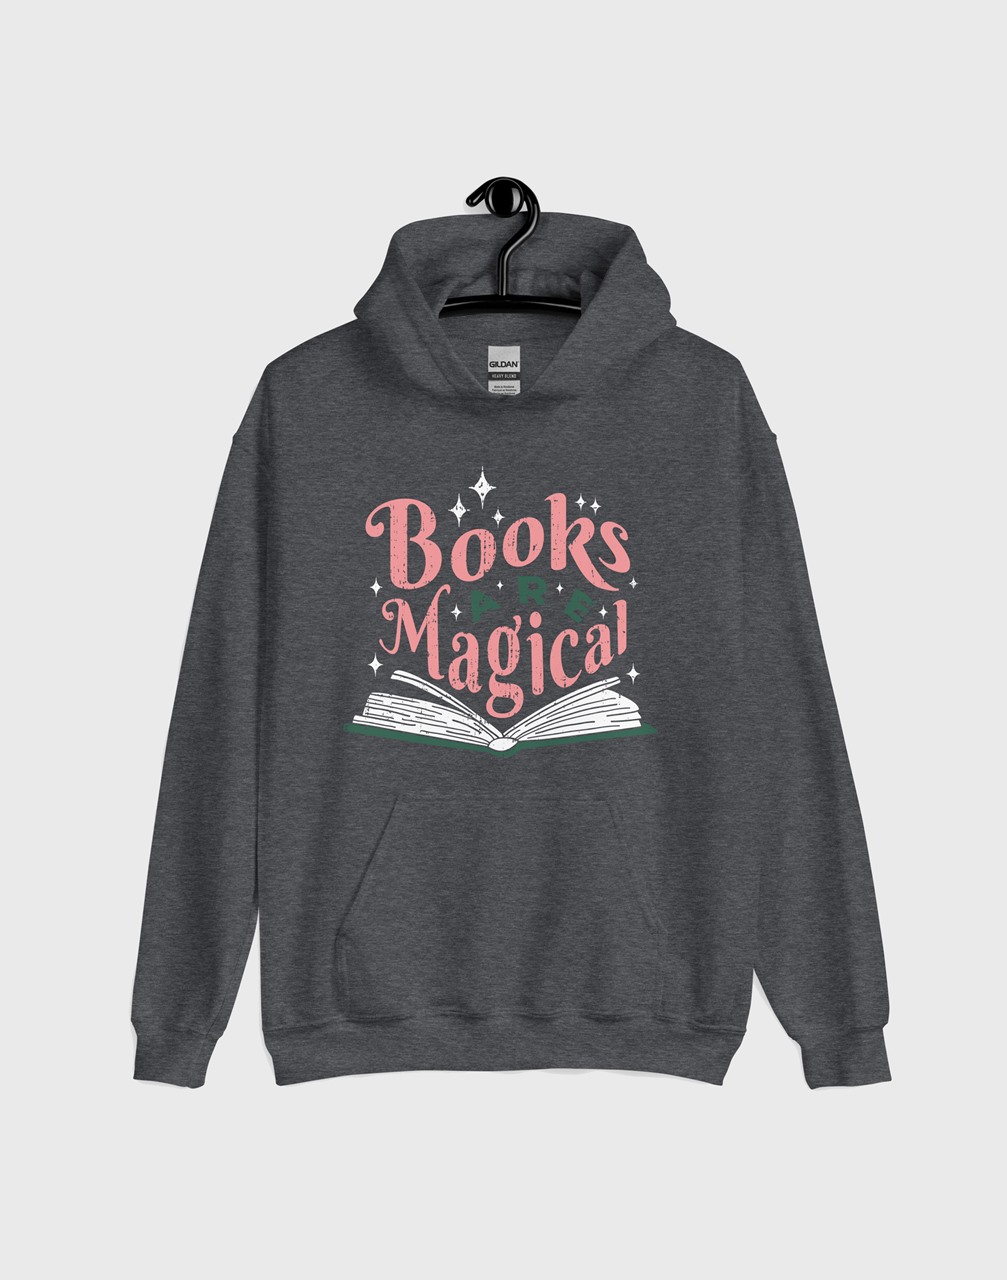 bookworms hoodies